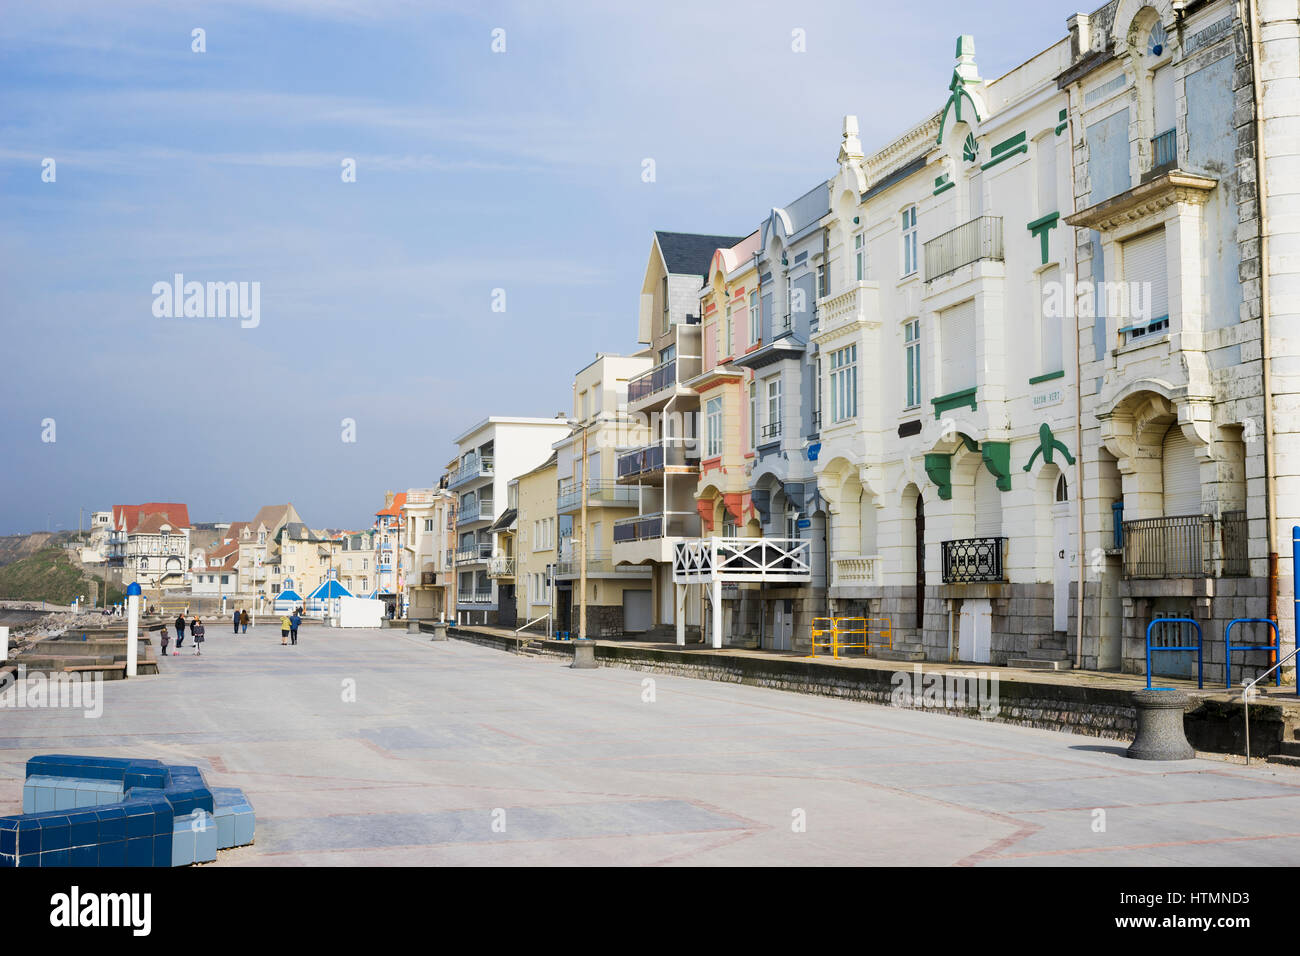 Passeggiata Lungomare con architettura belle epoque a Wimereux, Cote d' Opale, Francia Foto Stock